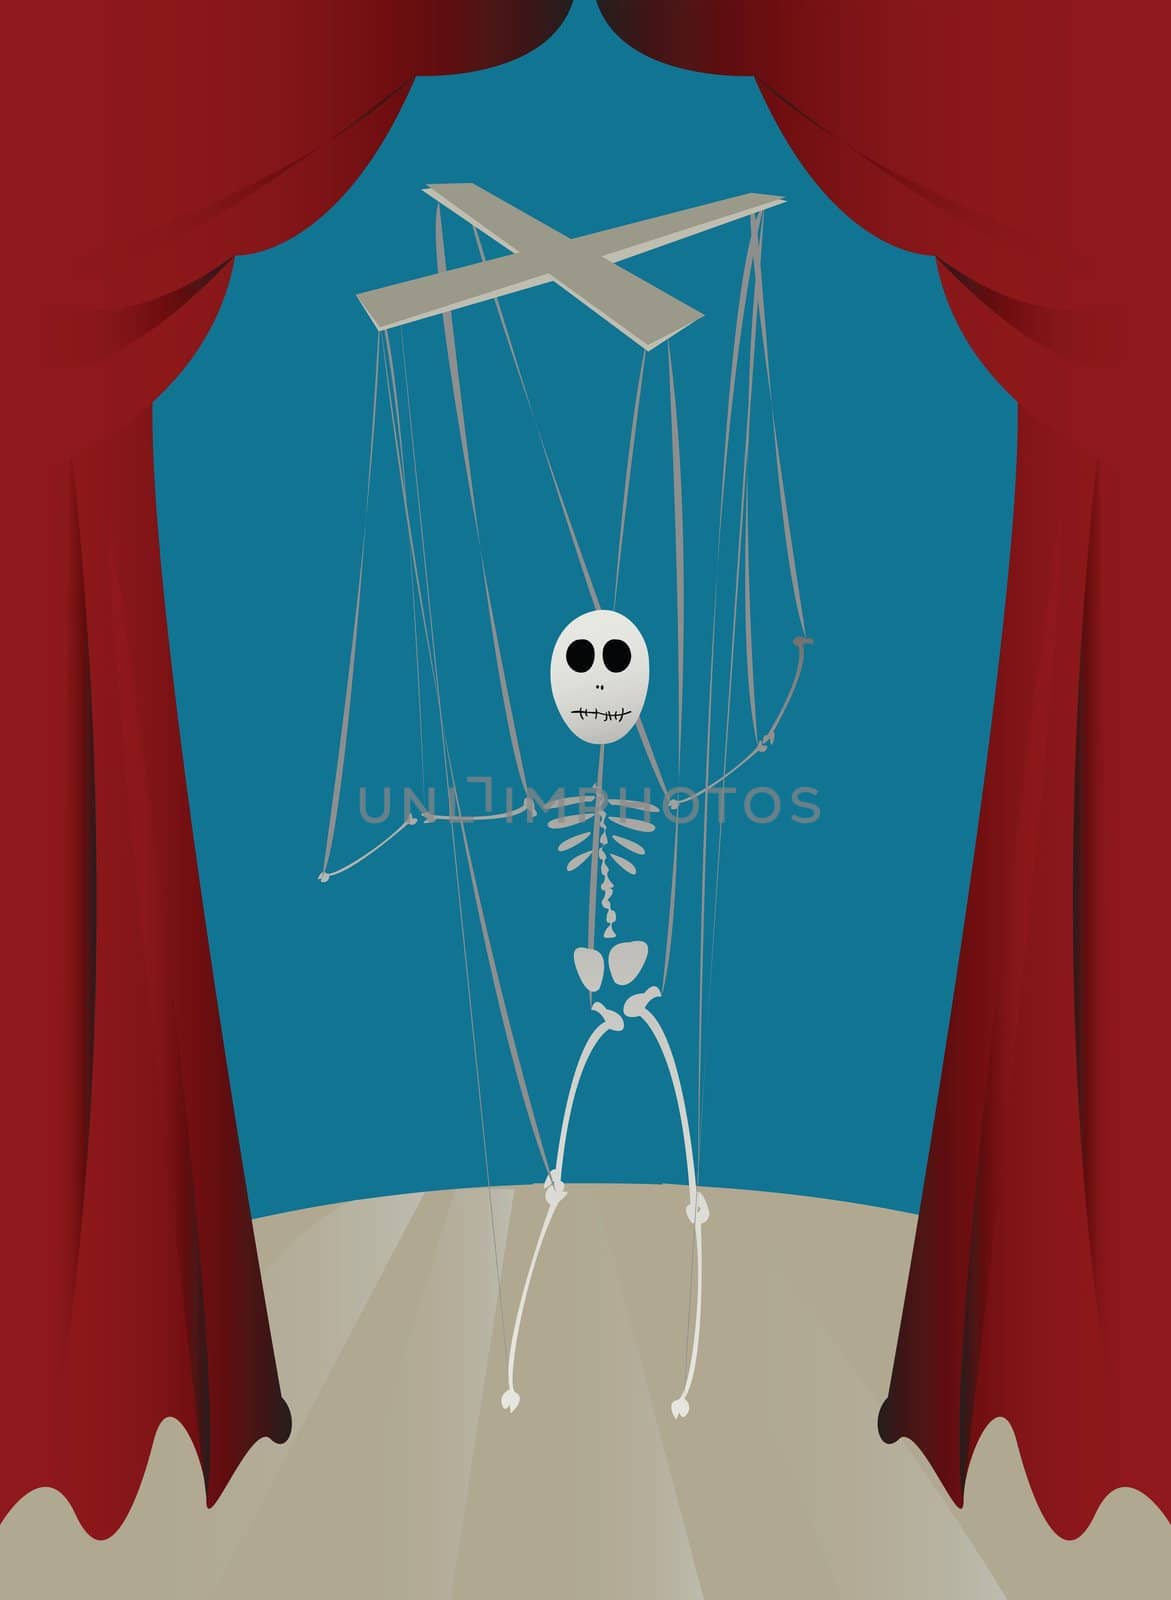 Strings skeleton puppet